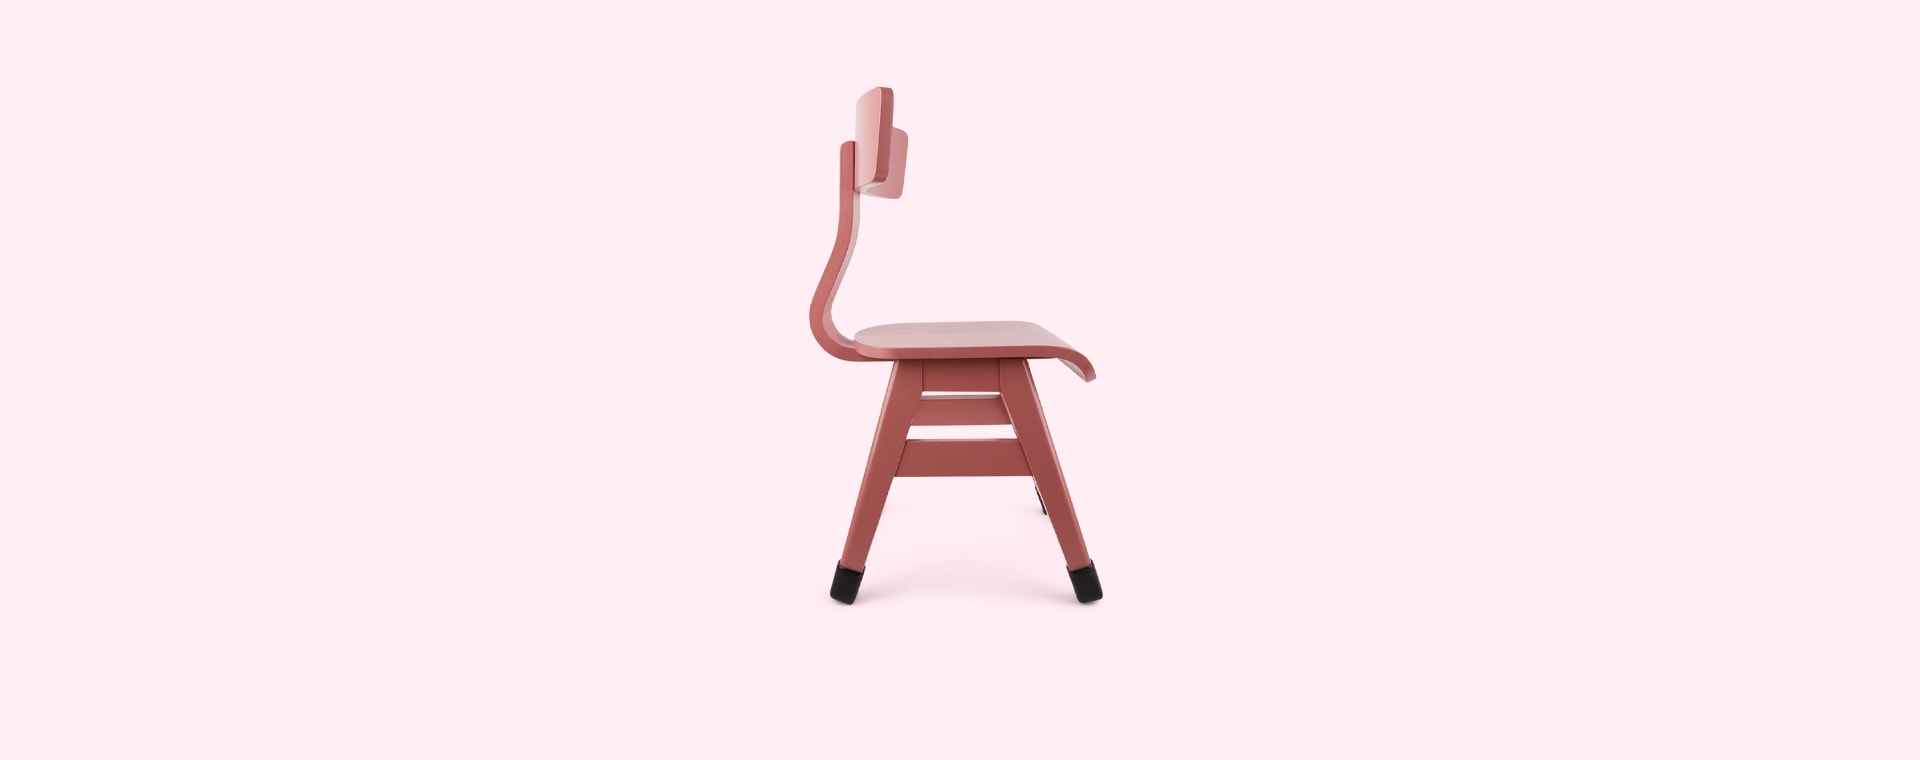 Pink Little Dutch Chair